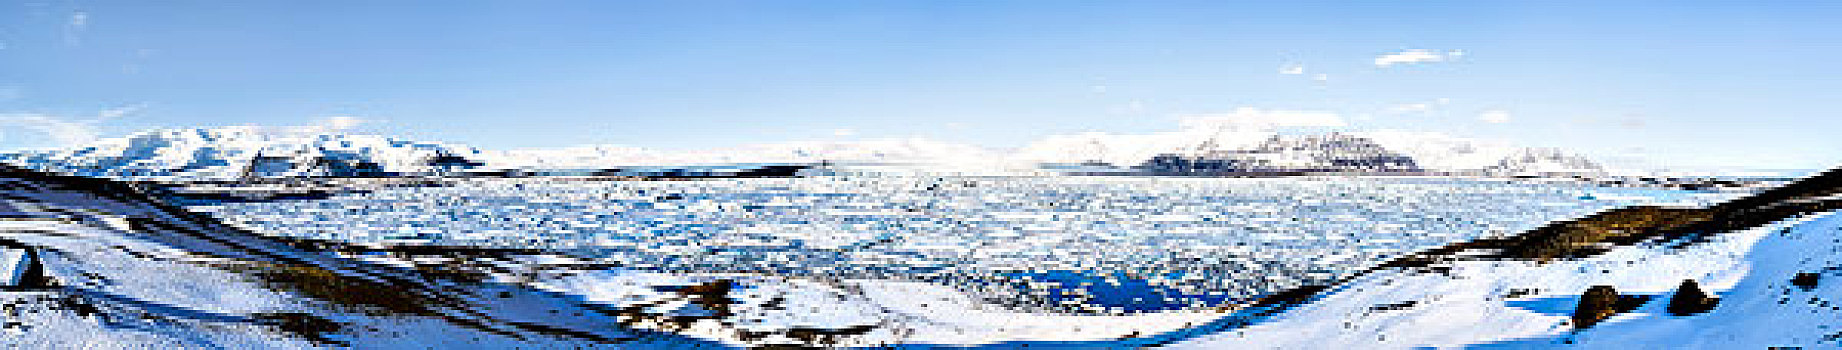 结冰,泻湖,杰古沙龙湖,瓦特纳冰川,国家公园,大幅,尺寸